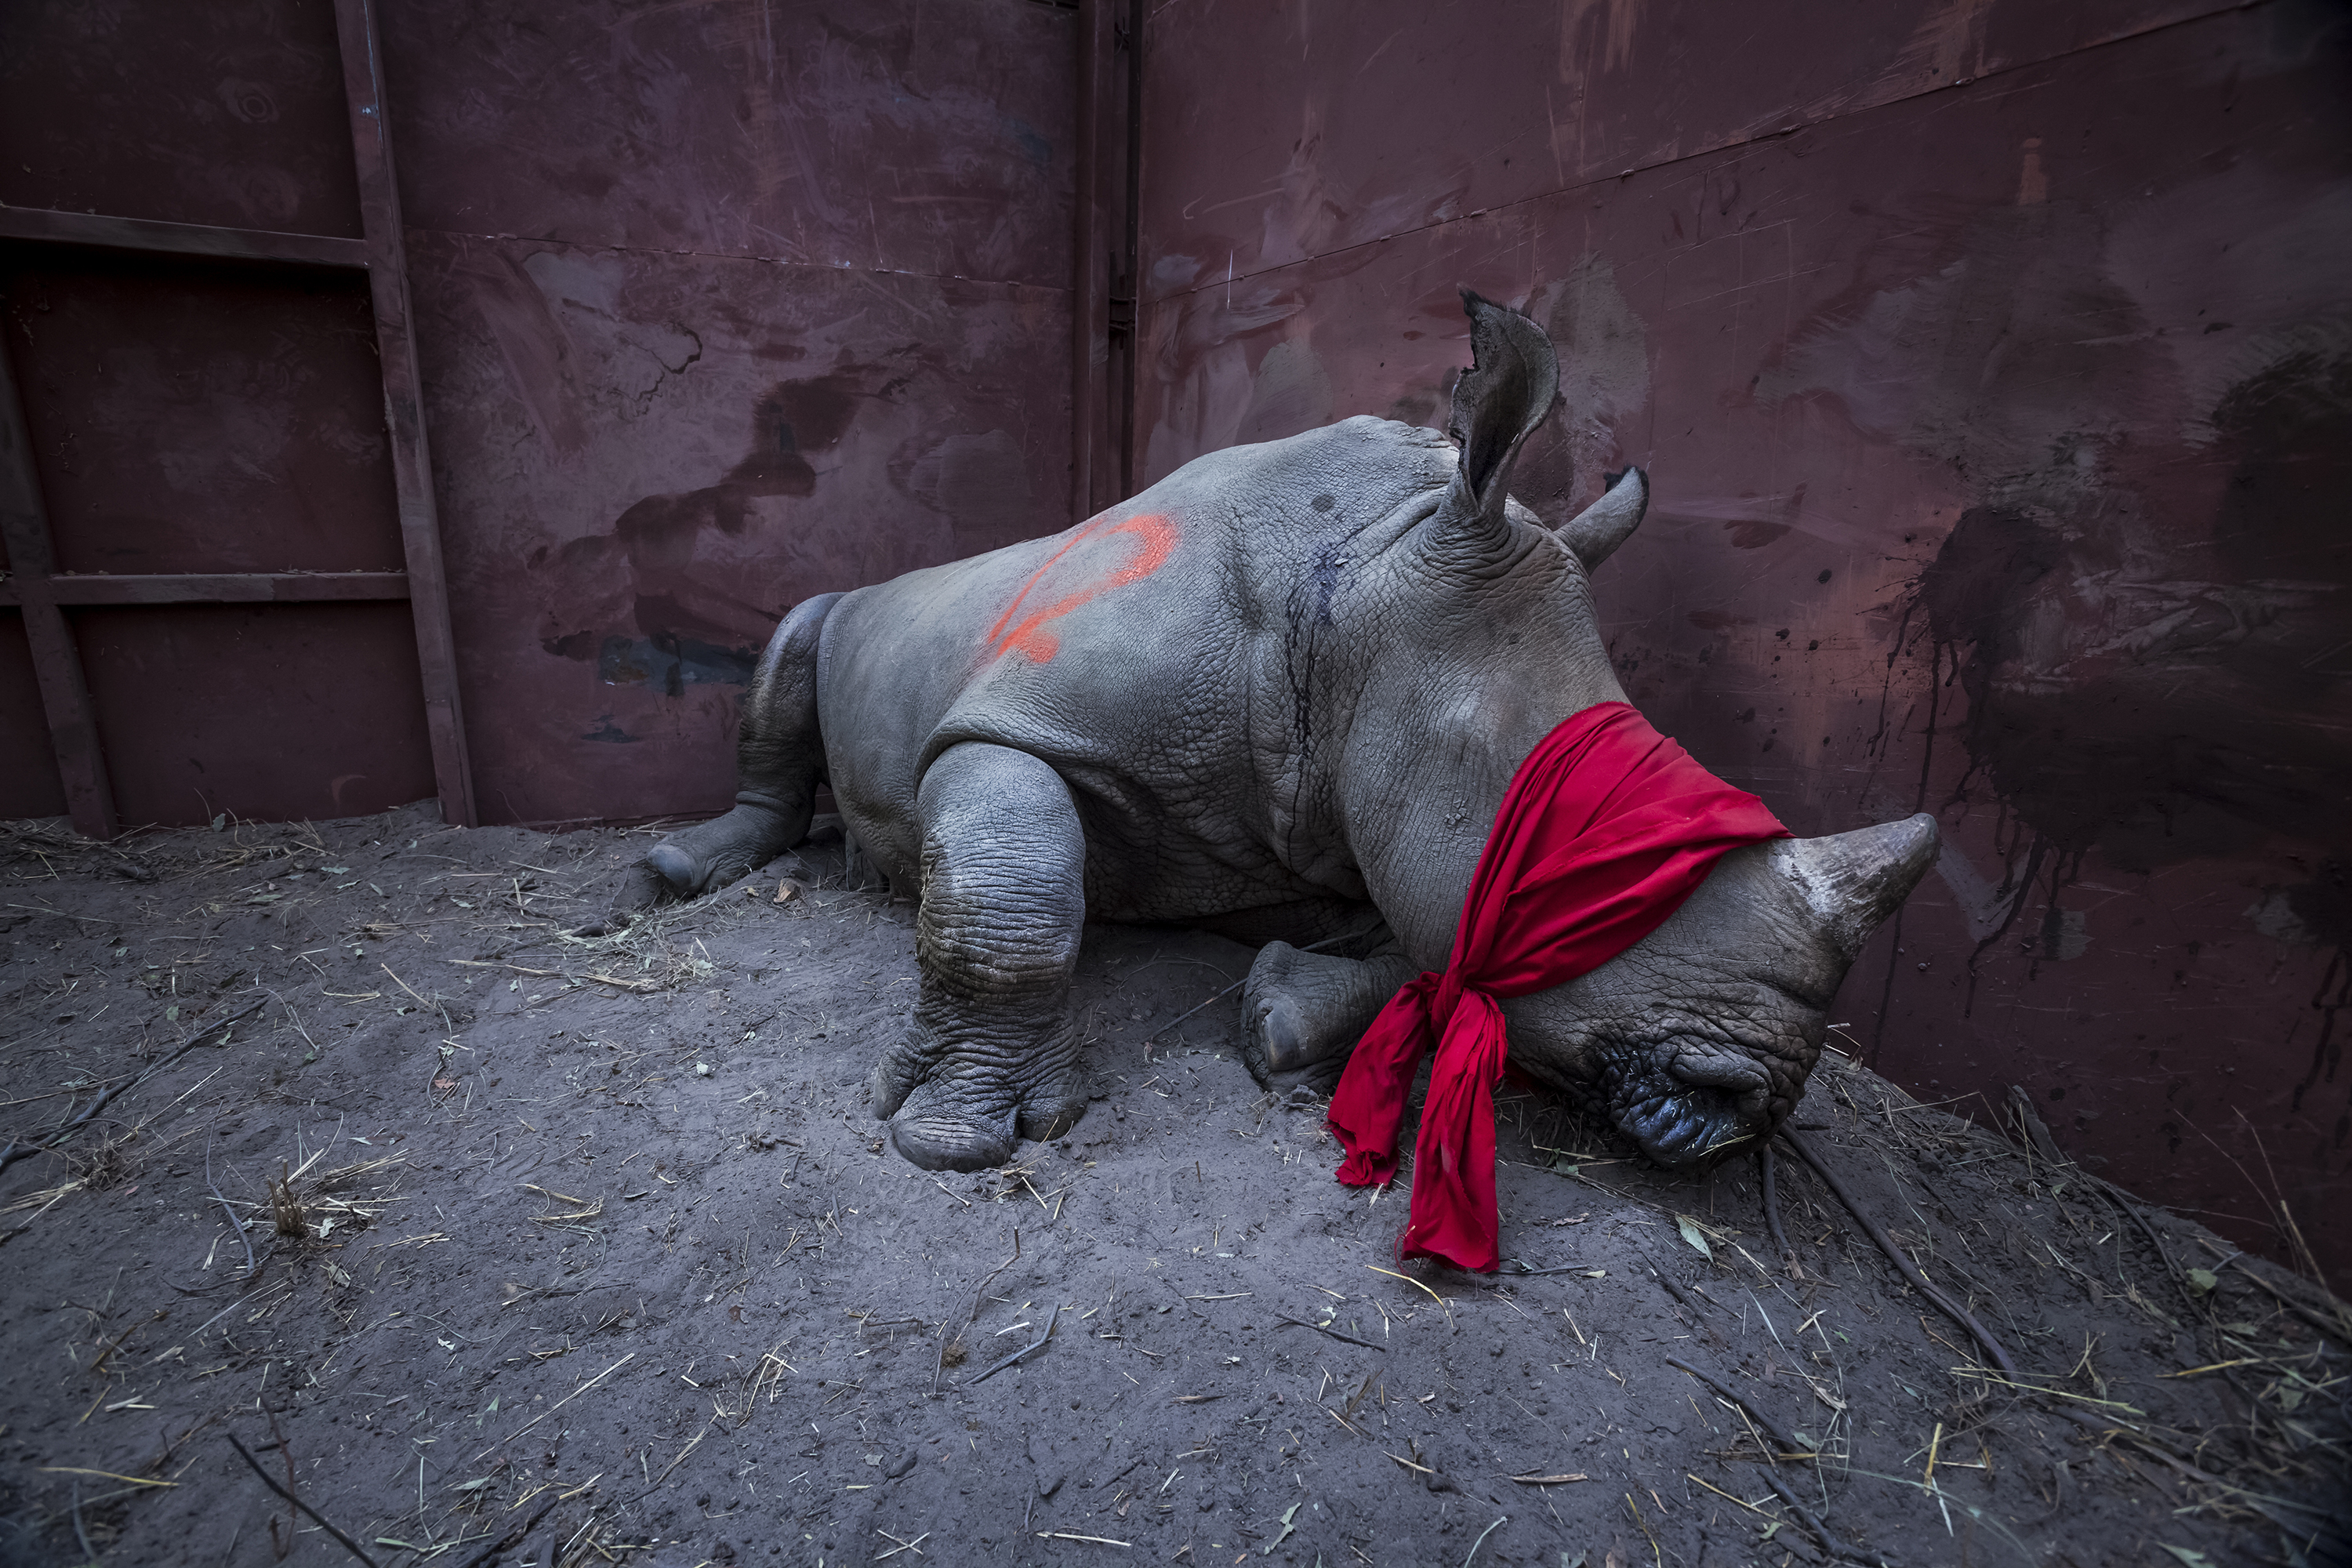 21 Settembre 2017 -  Un giovane rinoceronte bianco del sud, drogato e bendato, sta per essere rilasciato allo stato selvatico nel Delta dell'Okavango, in Botswana, dopo il suo trasferimento dal Sud Africa per proteggersi dai bracconieri. Storia: I rinoceronti bianchi del sud sono classificati come "quasi in pericolo". Il corno di rinoceronte è molto apprezzato, specialmente in Vietnam e in Cina, per le sue proprietà medicinali percepite, e in luoghi è usato come droga ricreativa. I corni possono ottenere tra € 20.000 e € 50.000 per chilogrammo. Il bracconaggio in Sud Africa è salito da 13 rinoceronti all'anno nel 2007 a un massimo di 1.215 nel 2014, e sebbene queste cifre siano leggermente diminuite da allora, le perdite sono ancora insostenibili. Il Botswana sta salvando rinoceronti dai punti caldi del bracconaggio in Sud Africa e sta ristabilendo popolazioni nei suoi santuari naturali. Credit Neil Aldridge 